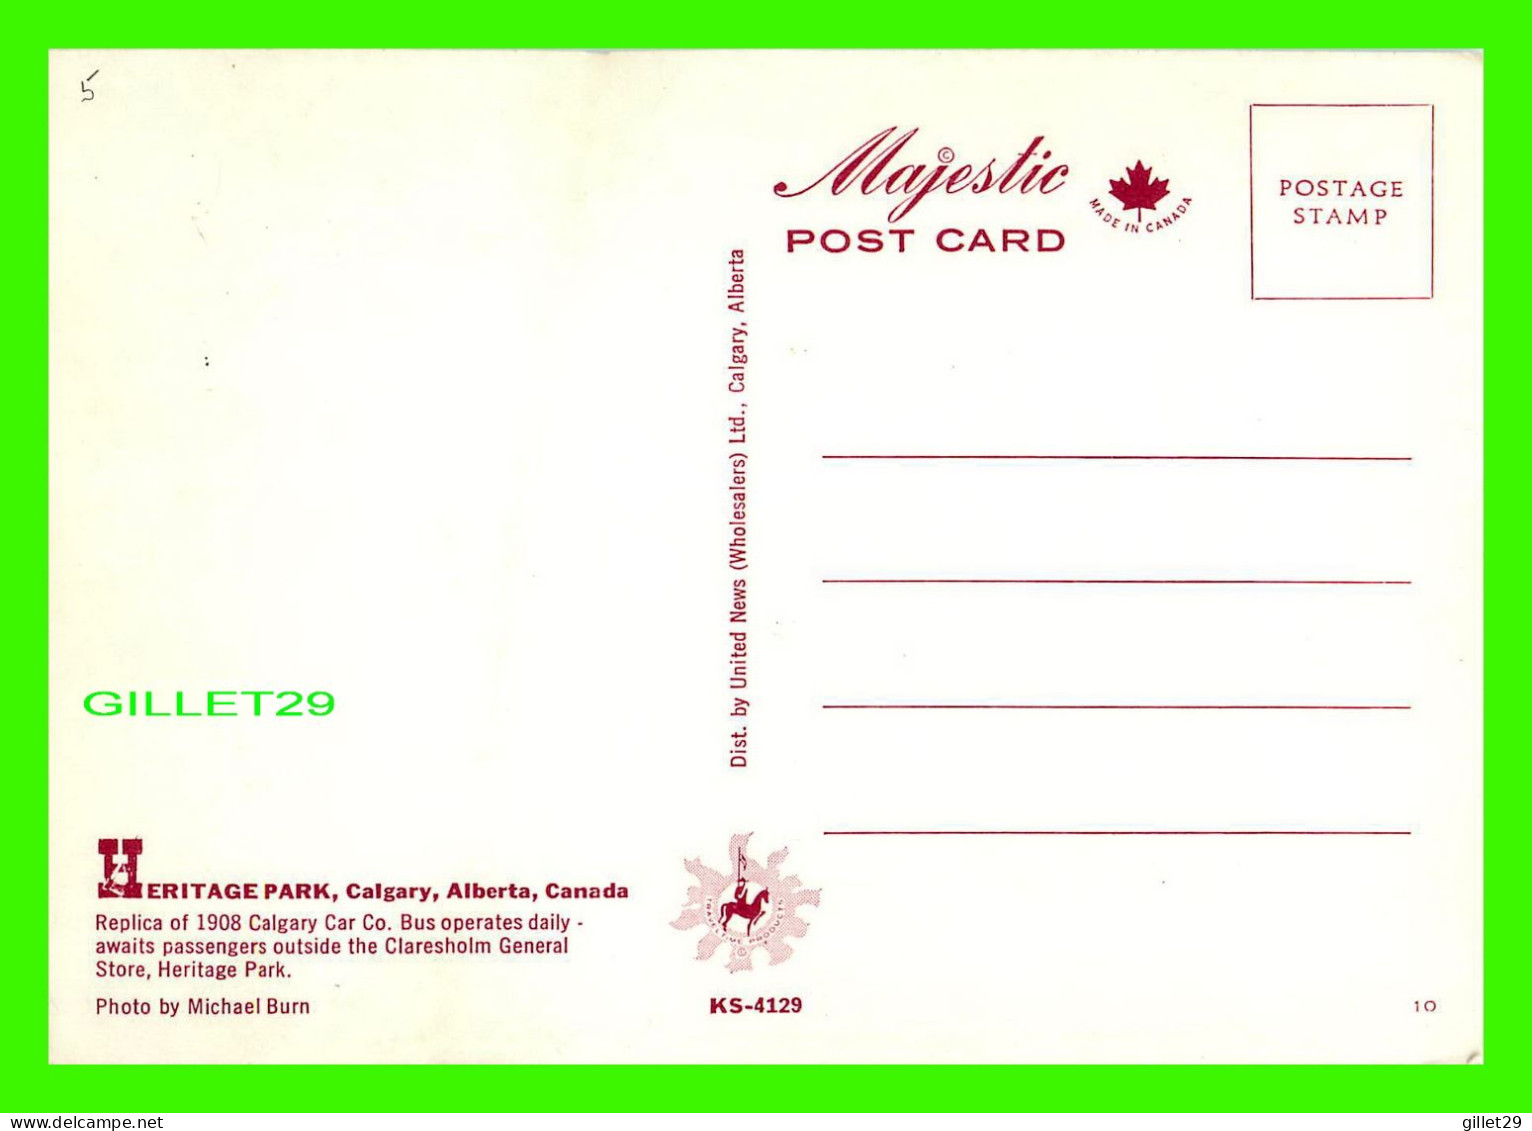 CALGARY, ALBERTA - CLARESHOLM GENERAL STORE AND 1908 BUS - HERITAGE PARL - MAJESTIC POST CARD - - Calgary